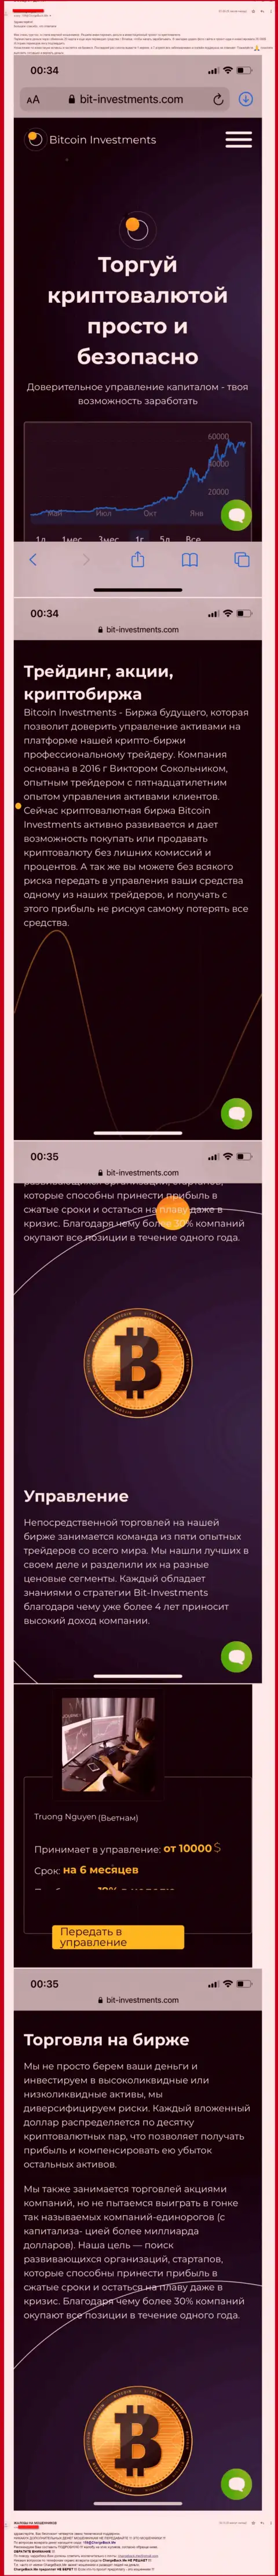 Держитесь от компании Bitcoin Limited как можно дальше, вытягивают деньги !!! (отзыв)